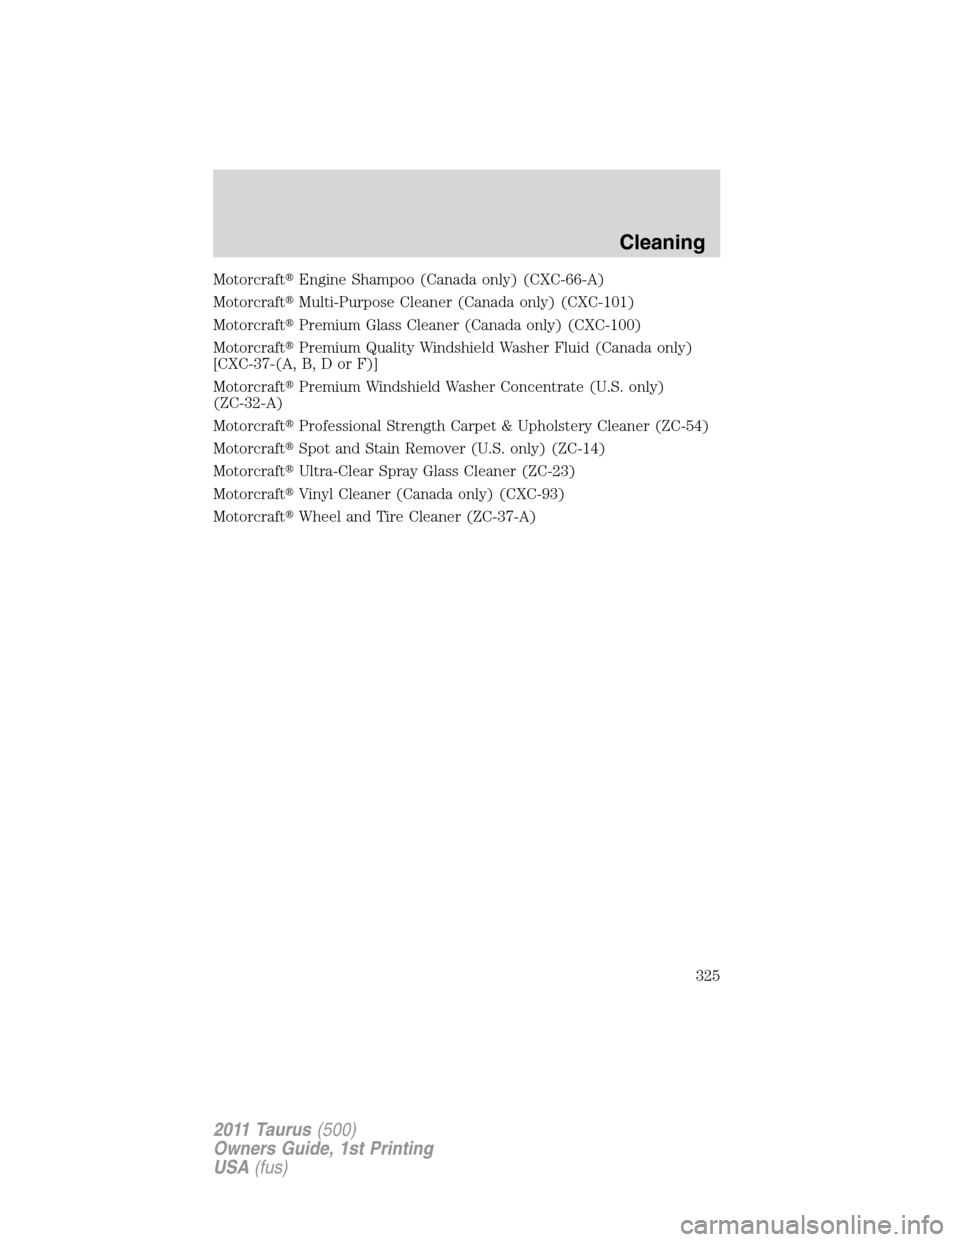 FORD TAURUS 2011 6.G Manual Online MotorcraftEngine Shampoo (Canada only) (CXC-66-A)
MotorcraftMulti-Purpose Cleaner (Canada only) (CXC-101)
MotorcraftPremium Glass Cleaner (Canada only) (CXC-100)
MotorcraftPremium Quality Windshie